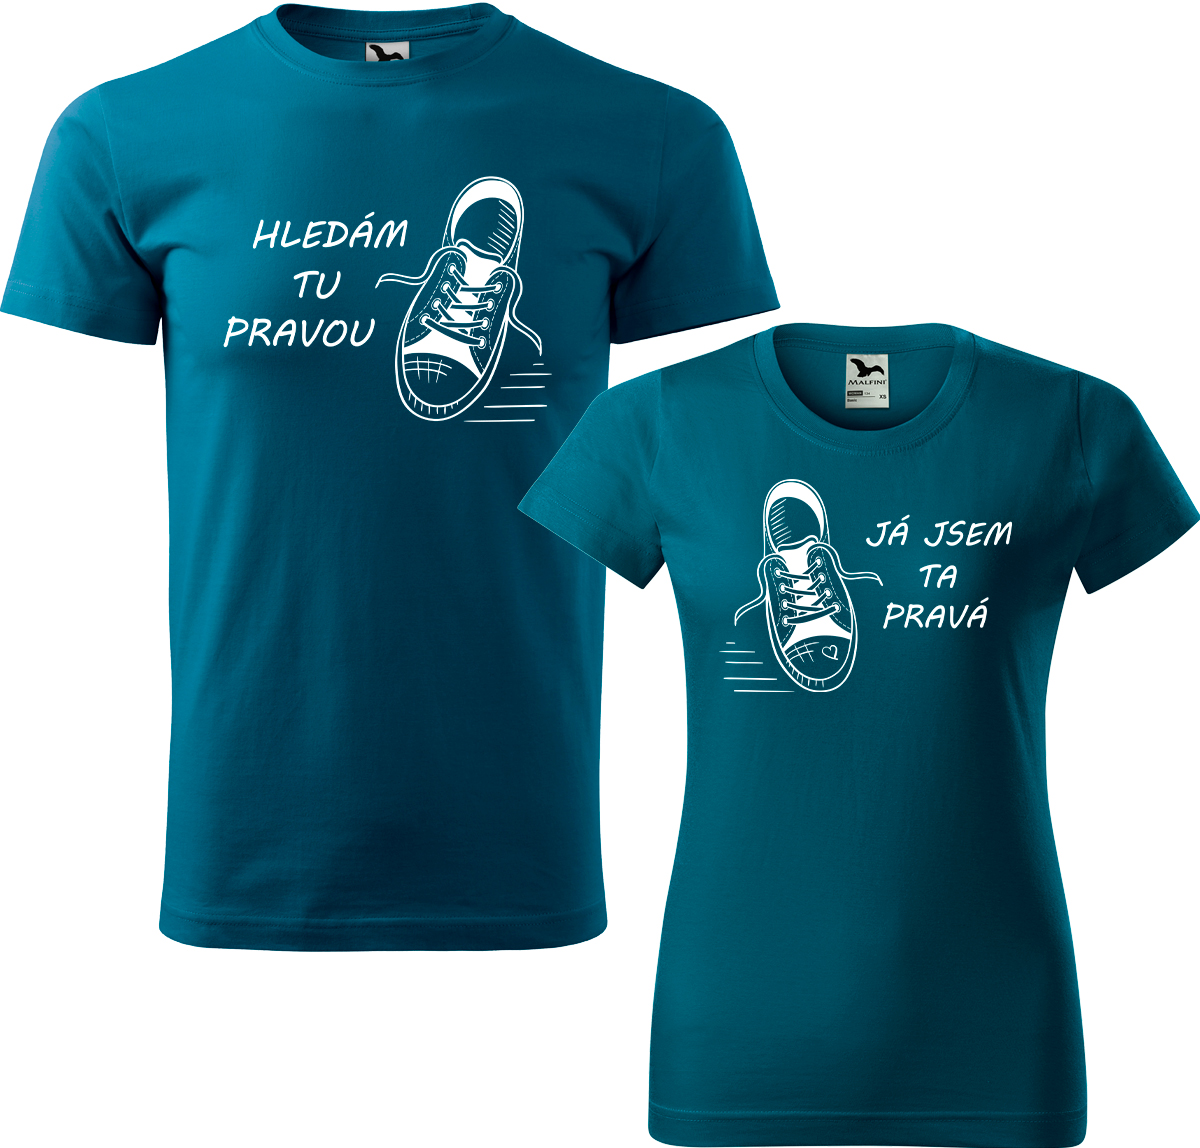 Trička pro páry - Kecky Barva: Petrolejová (93), Velikost dámské tričko: XL, Velikost pánské tričko: XL